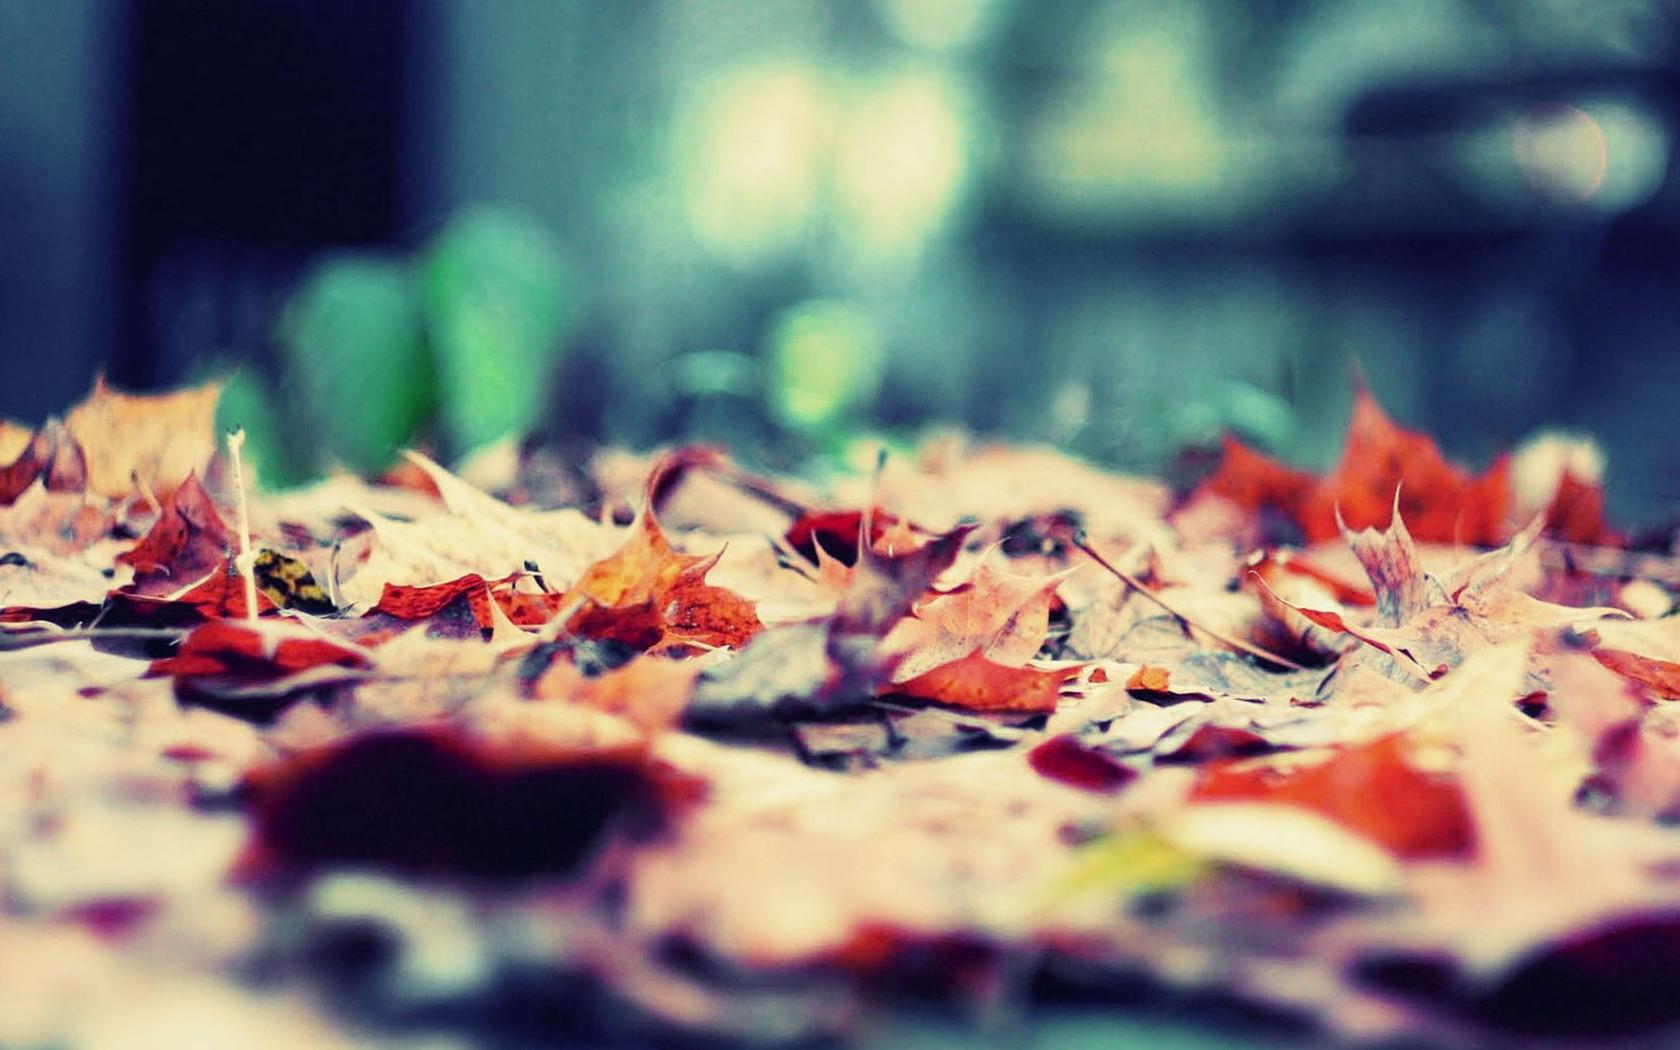 有哪些好看的关于秋季的图片或壁纸呢？ - 知乎